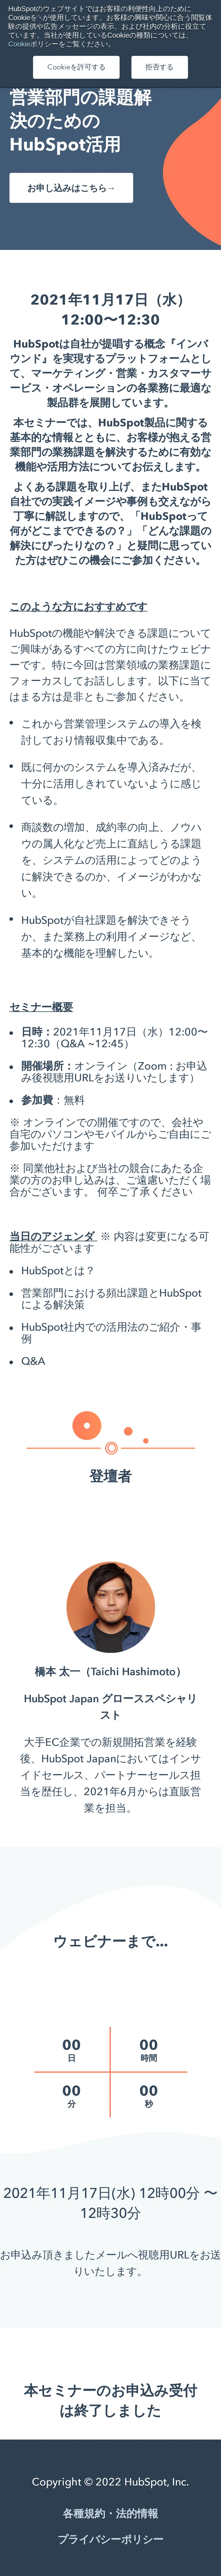 キャプチャ画面 会社名:HubSpot Japan株式会社プロジェクト名:Hubspot 画面名:説明会・セミナー詳細 デバイス名:SPカテゴリ:WEB・インターネットタグ:SP,説明会・セミナー詳細